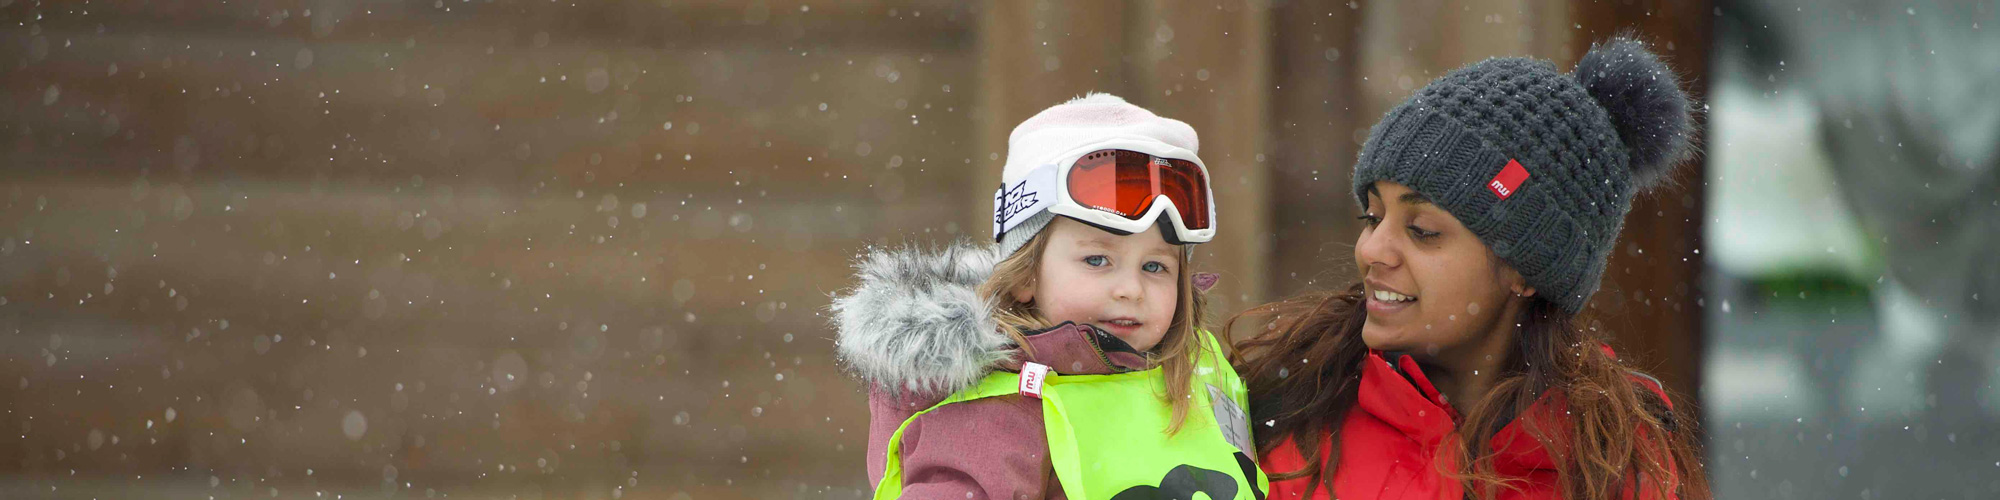 Ski childcare